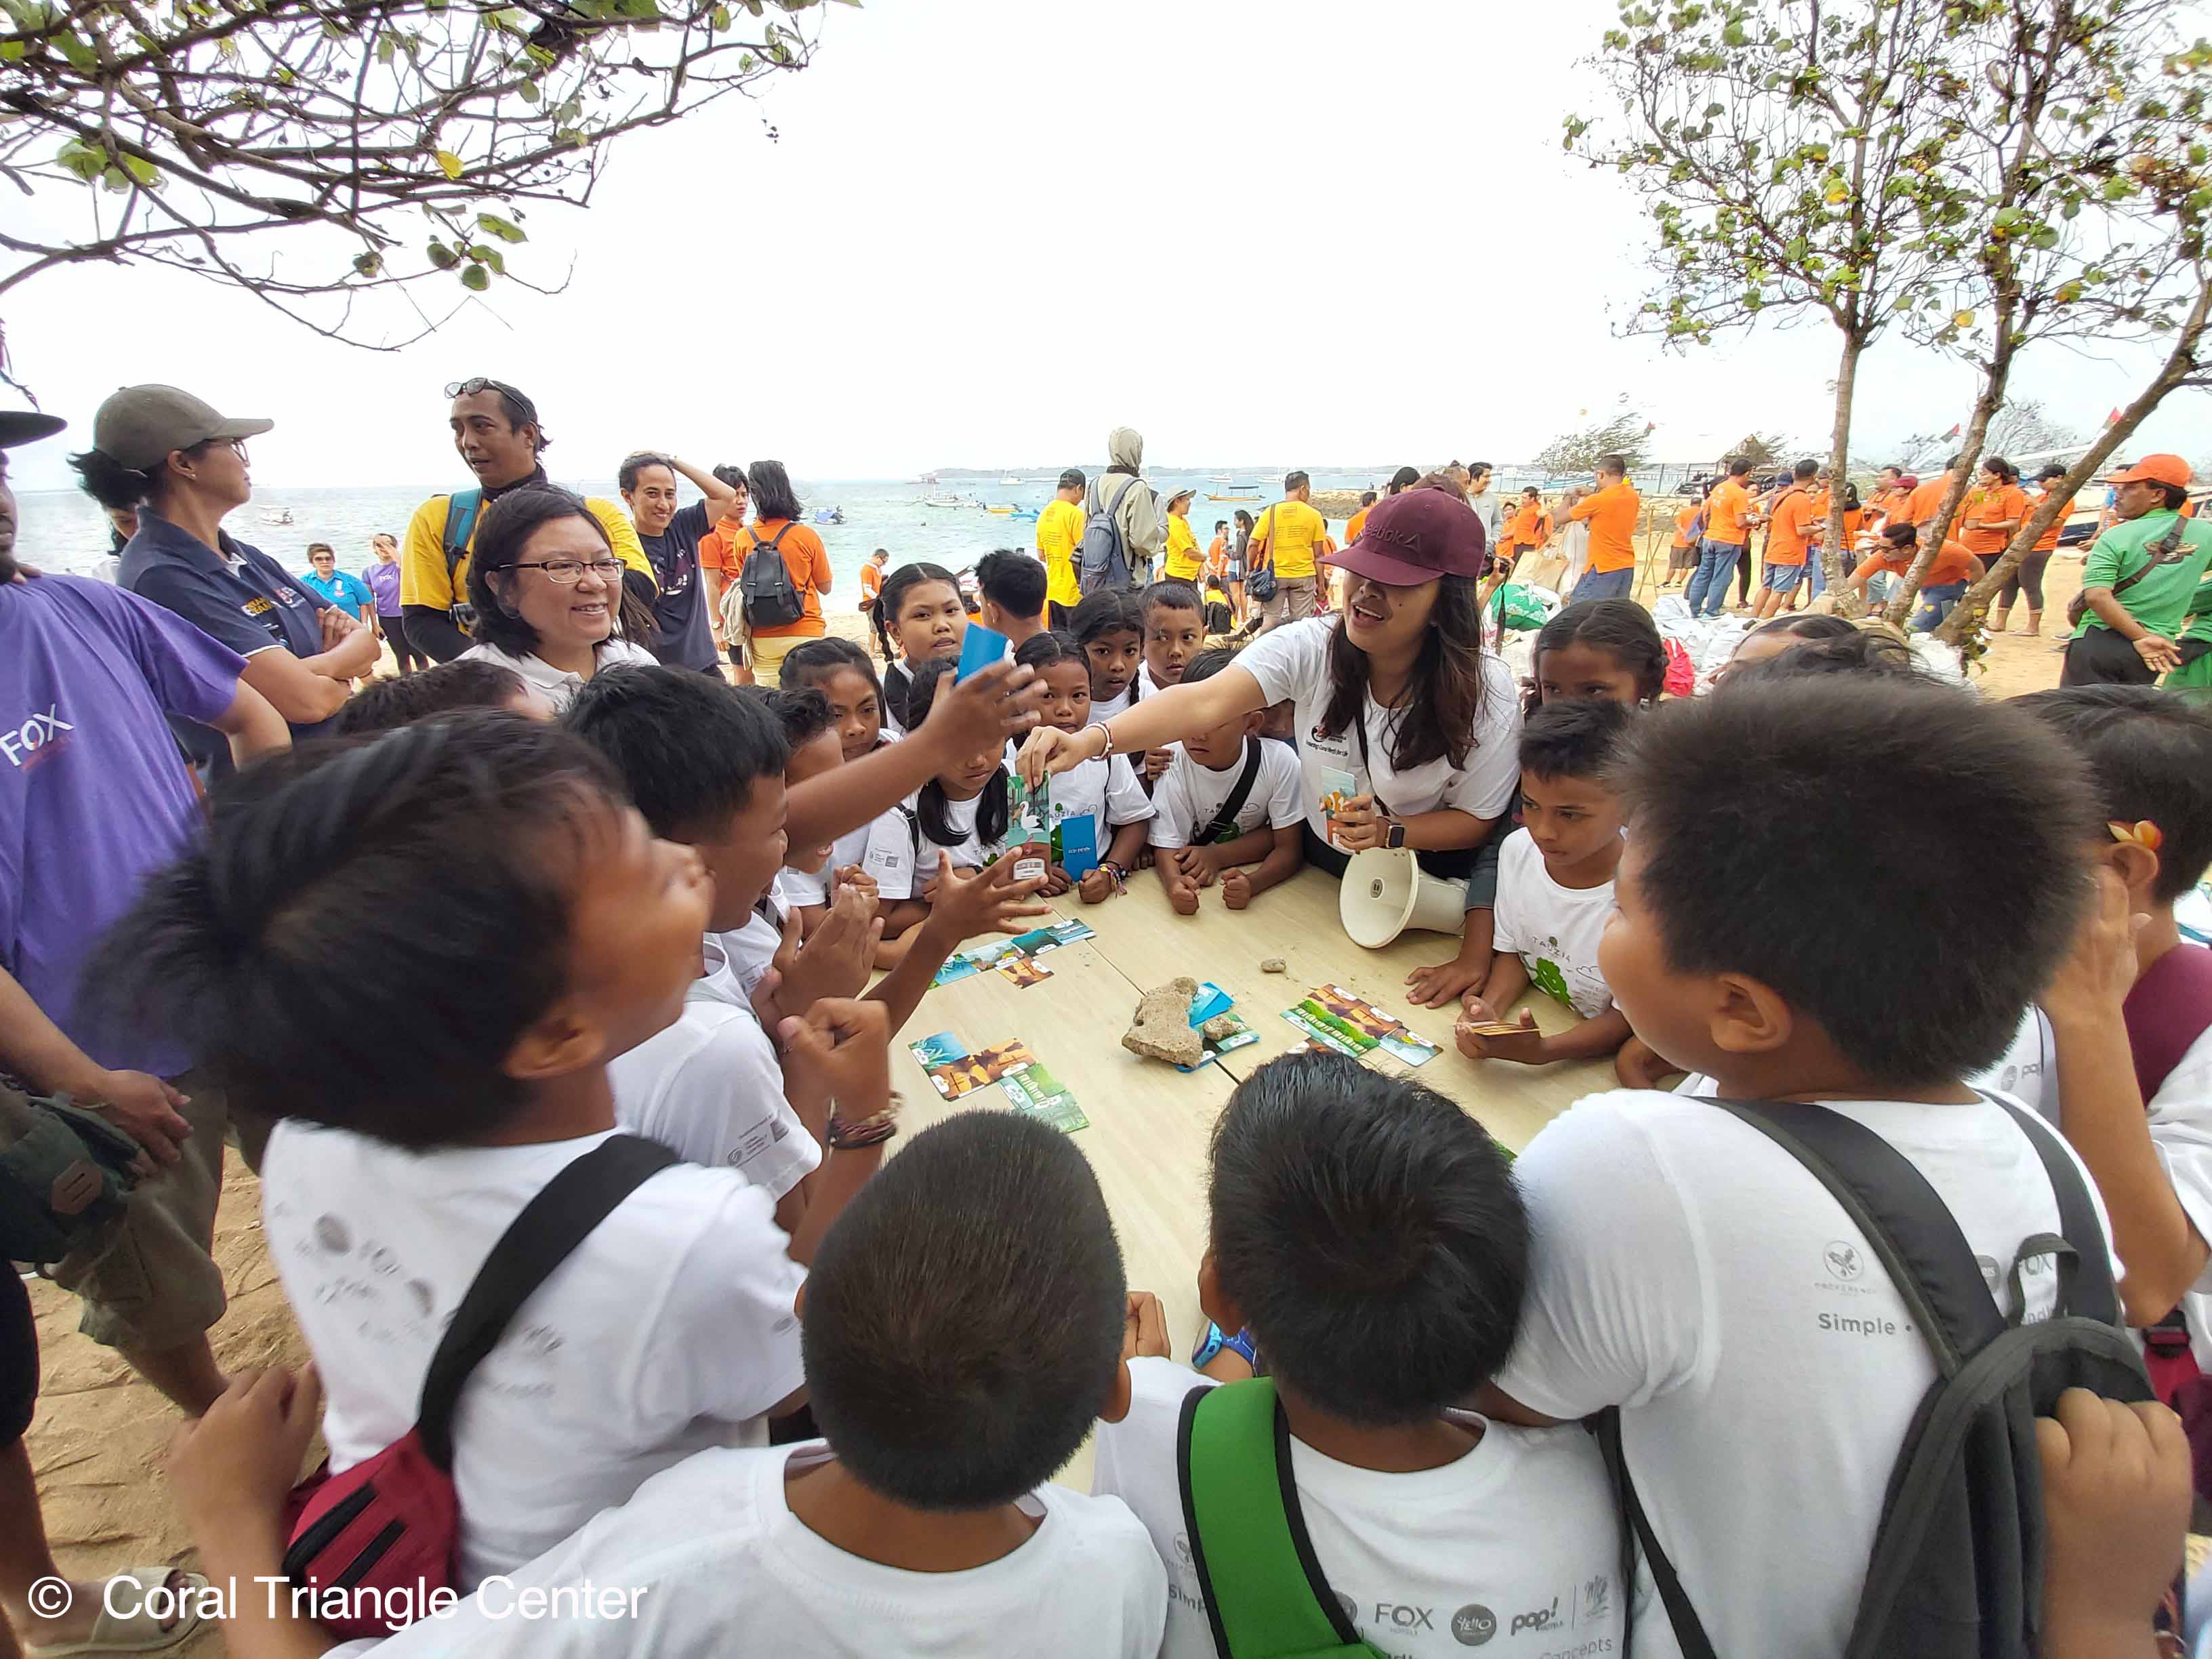 Anak-anak sekolah menhitung sampah plastik yang mereka kumpulkan di Pantai Mertasari, Sanur. Foto Coral Triangle Center.